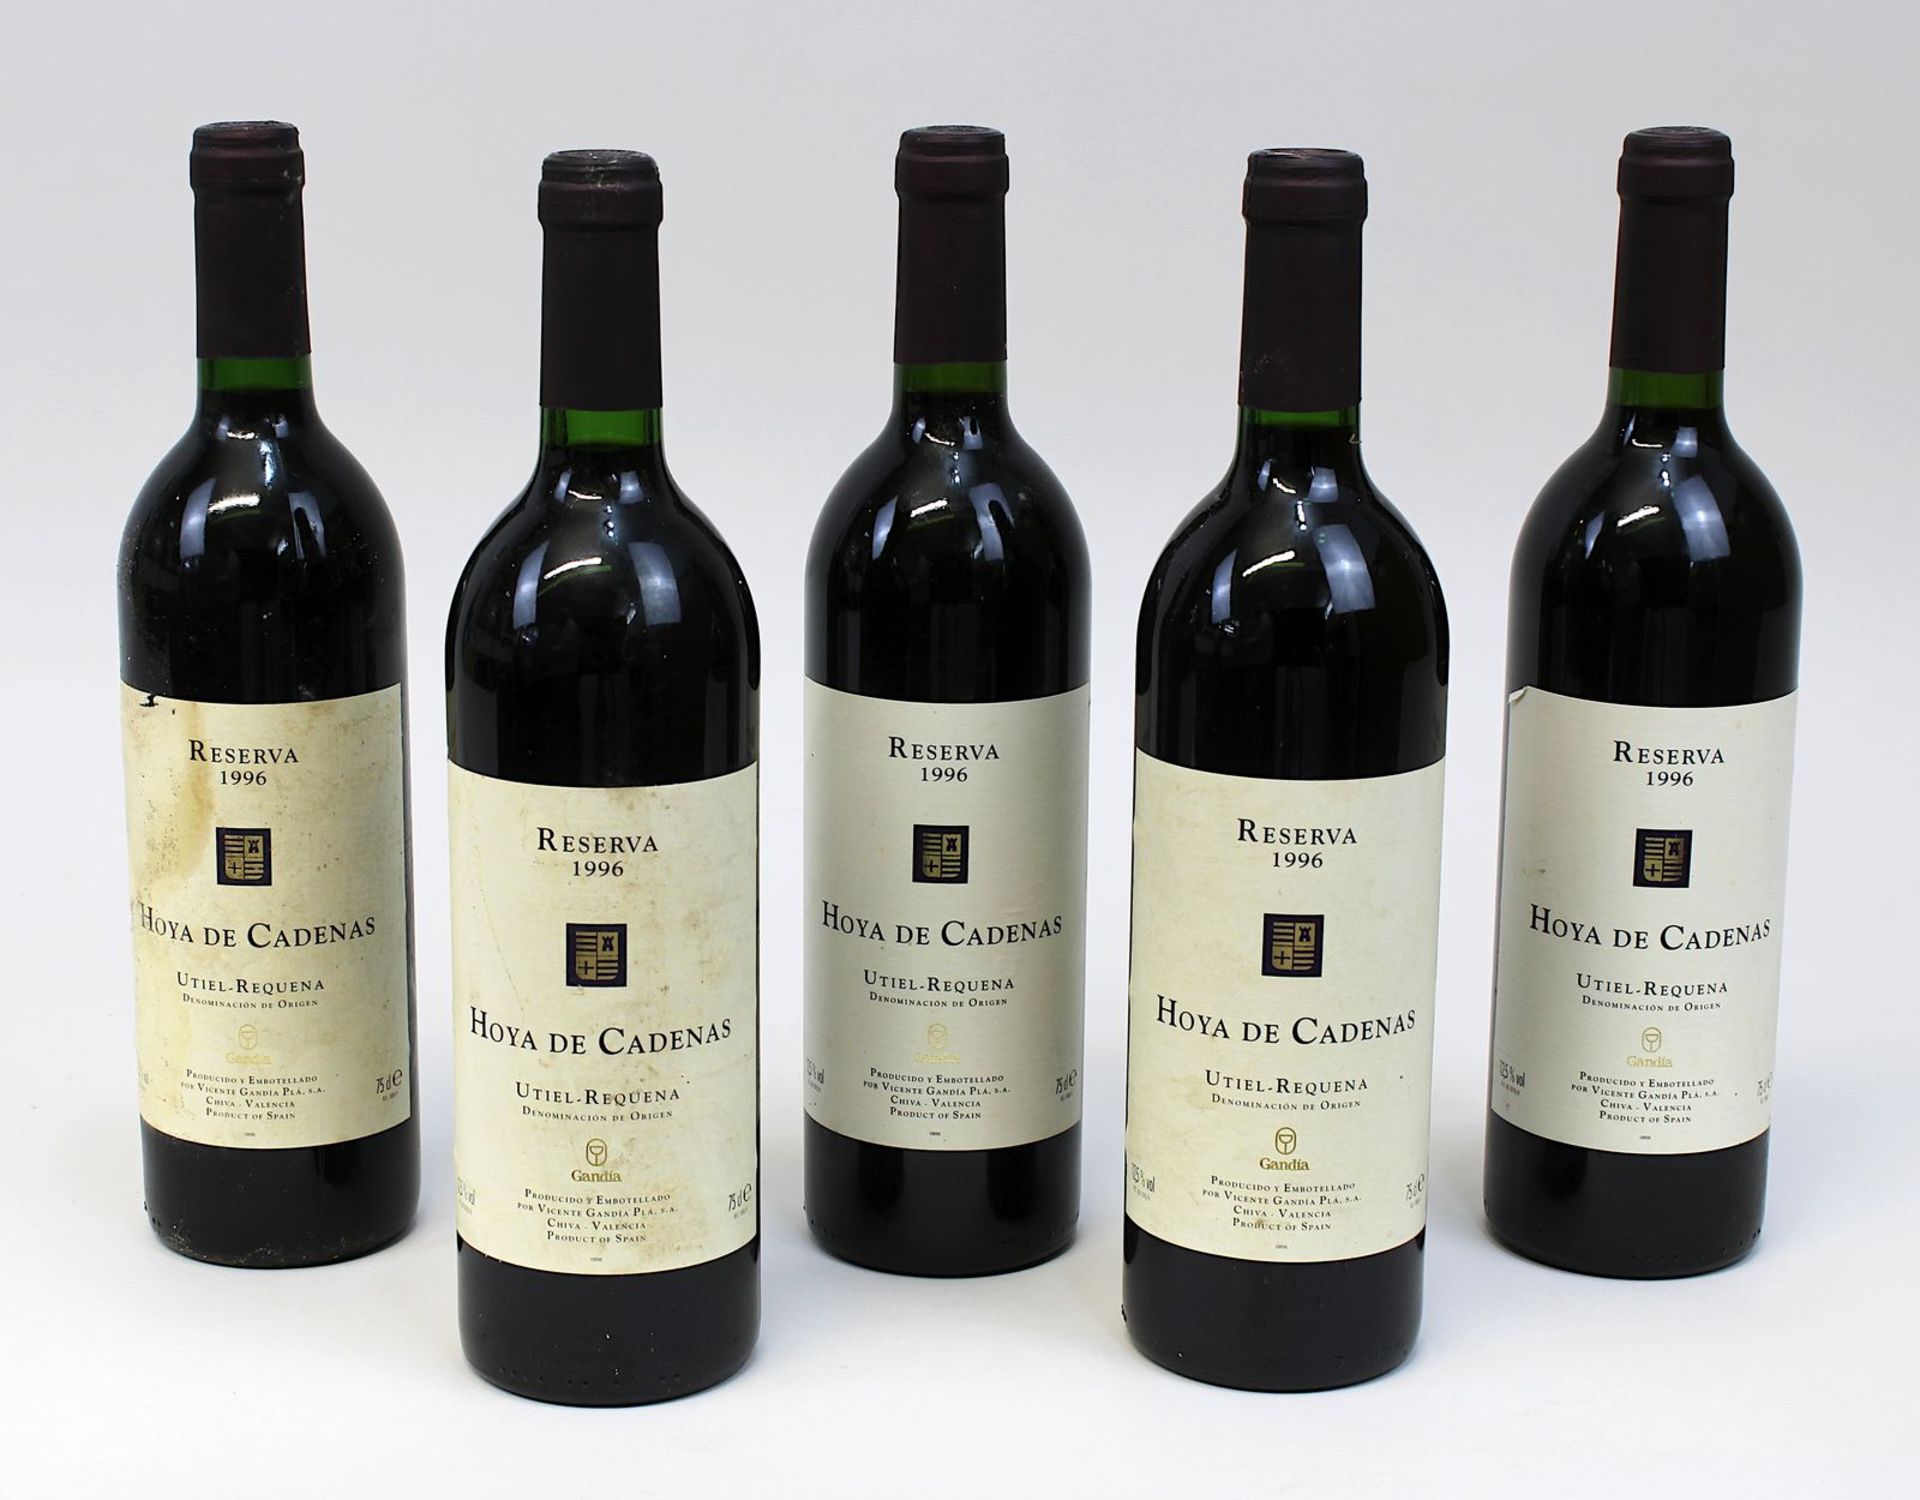 Fünf Flaschen 1996er Hoya de Cadenas, Reserva, Utiel - Requena, Vicente Gandia PLA S.A., jeweils